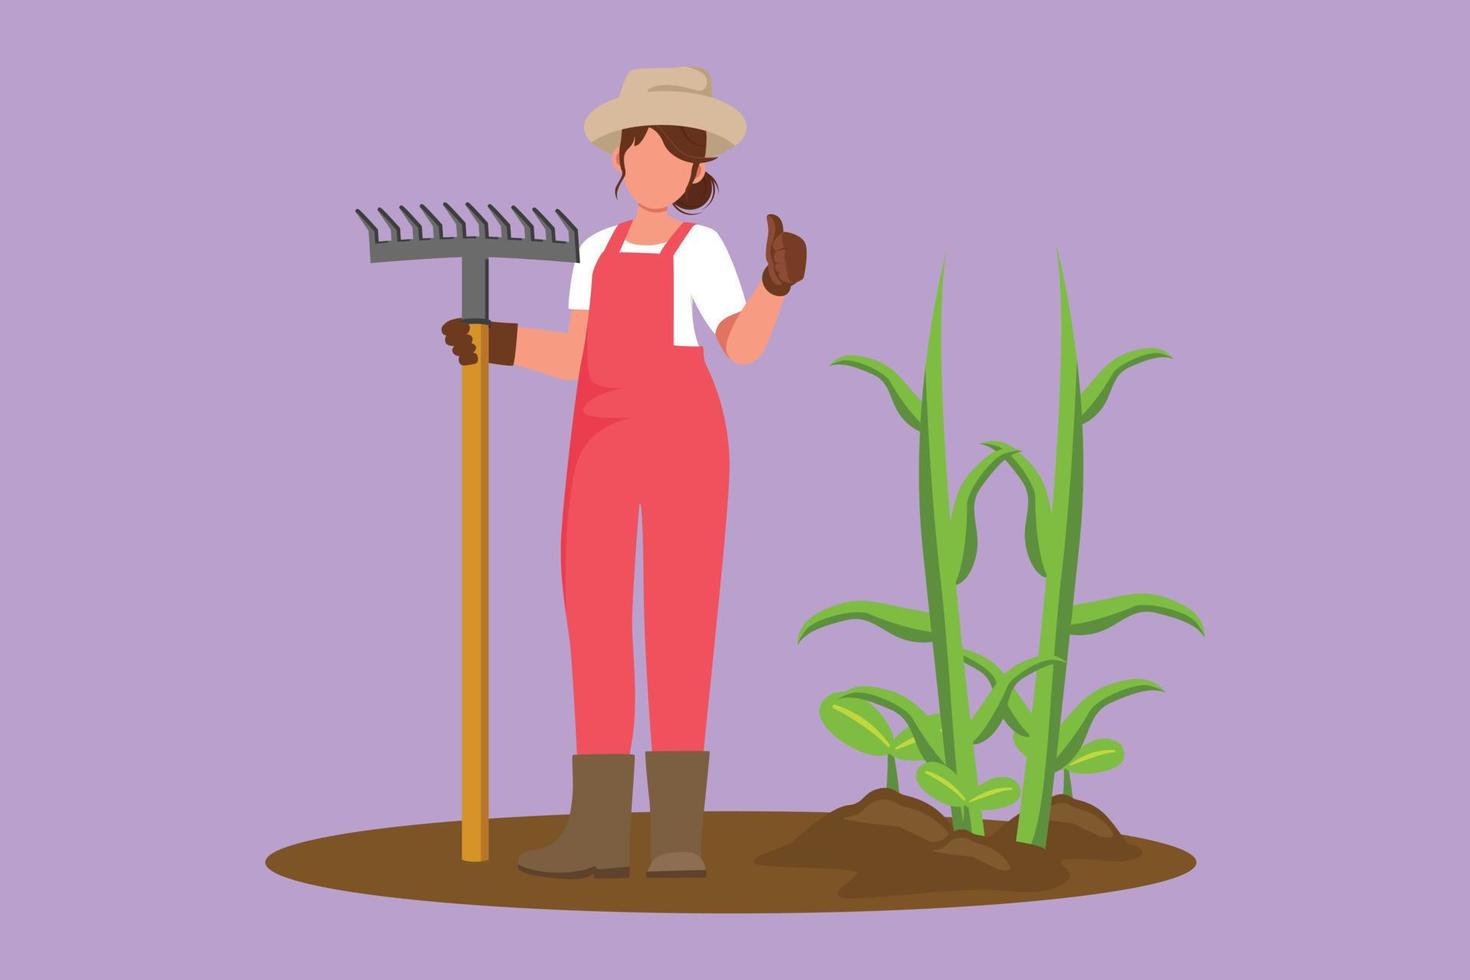 dibujo de diseño gráfico plano mujer agricultora de pie con gesto de aprobación, usando sombrero de paja y llevando rastrillo para plantar cultivos en tierras de cultivo. trabajador rural agrícola. ilustración vectorial de estilo de dibujos animados vector